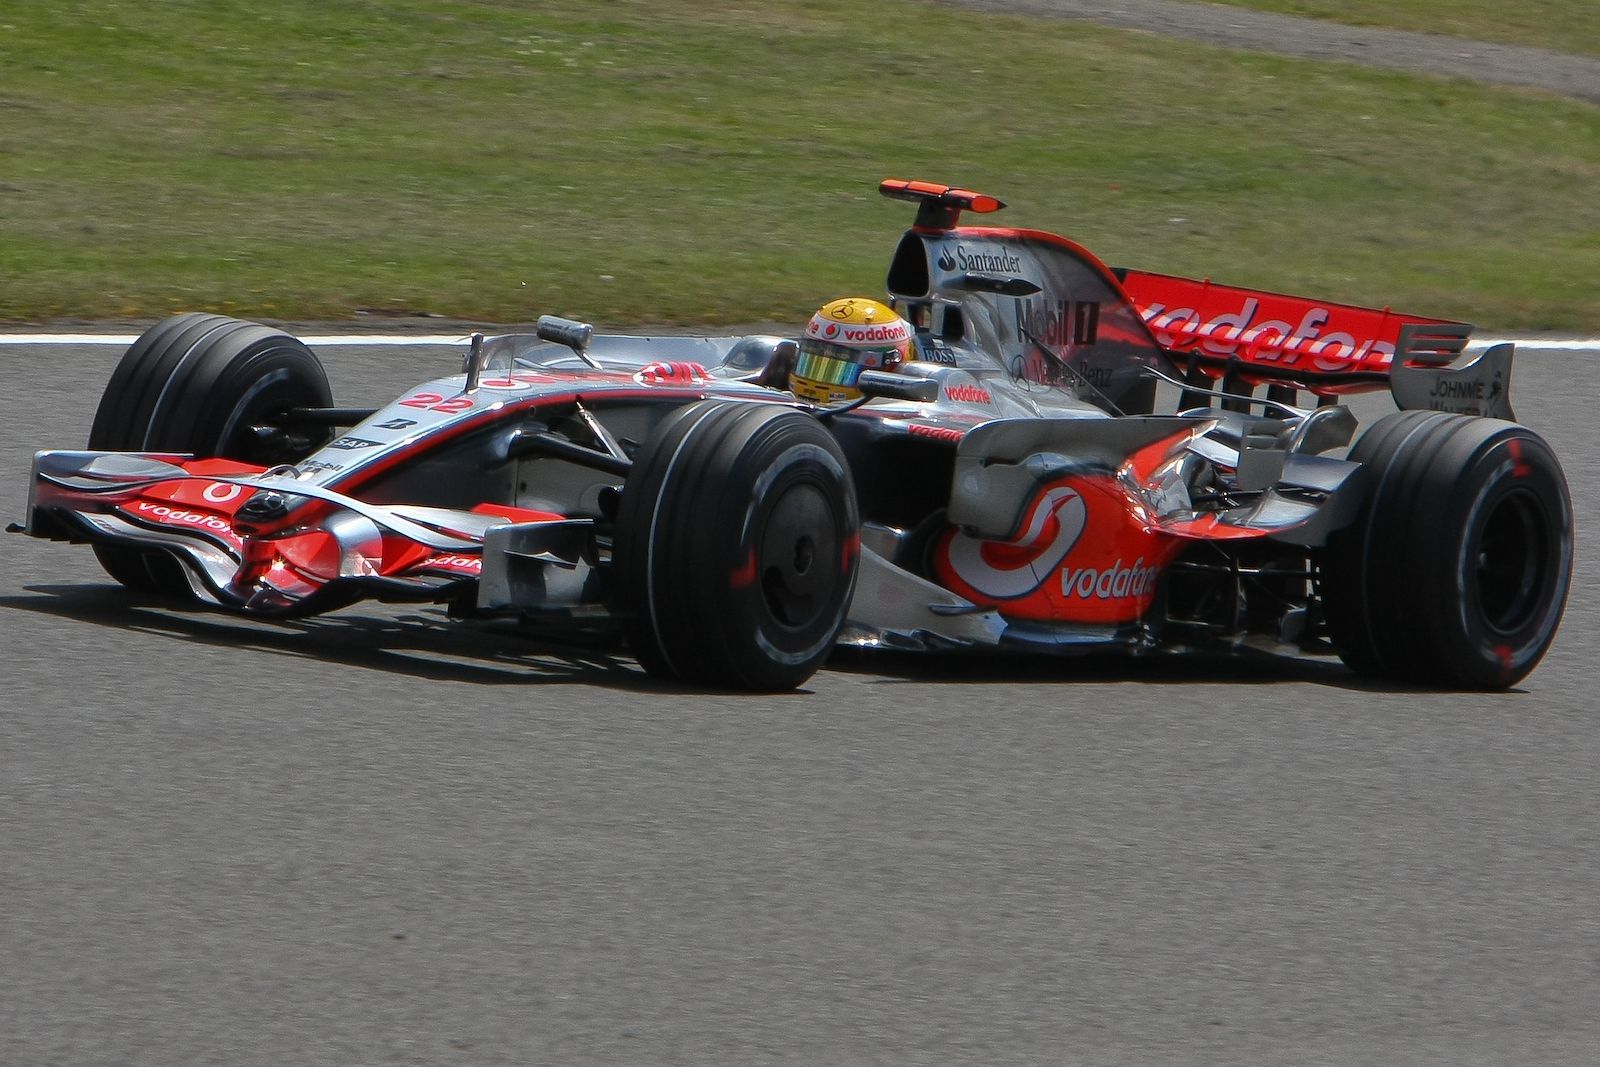 Lewis Hamilton in the 2008 McLaren F1 car